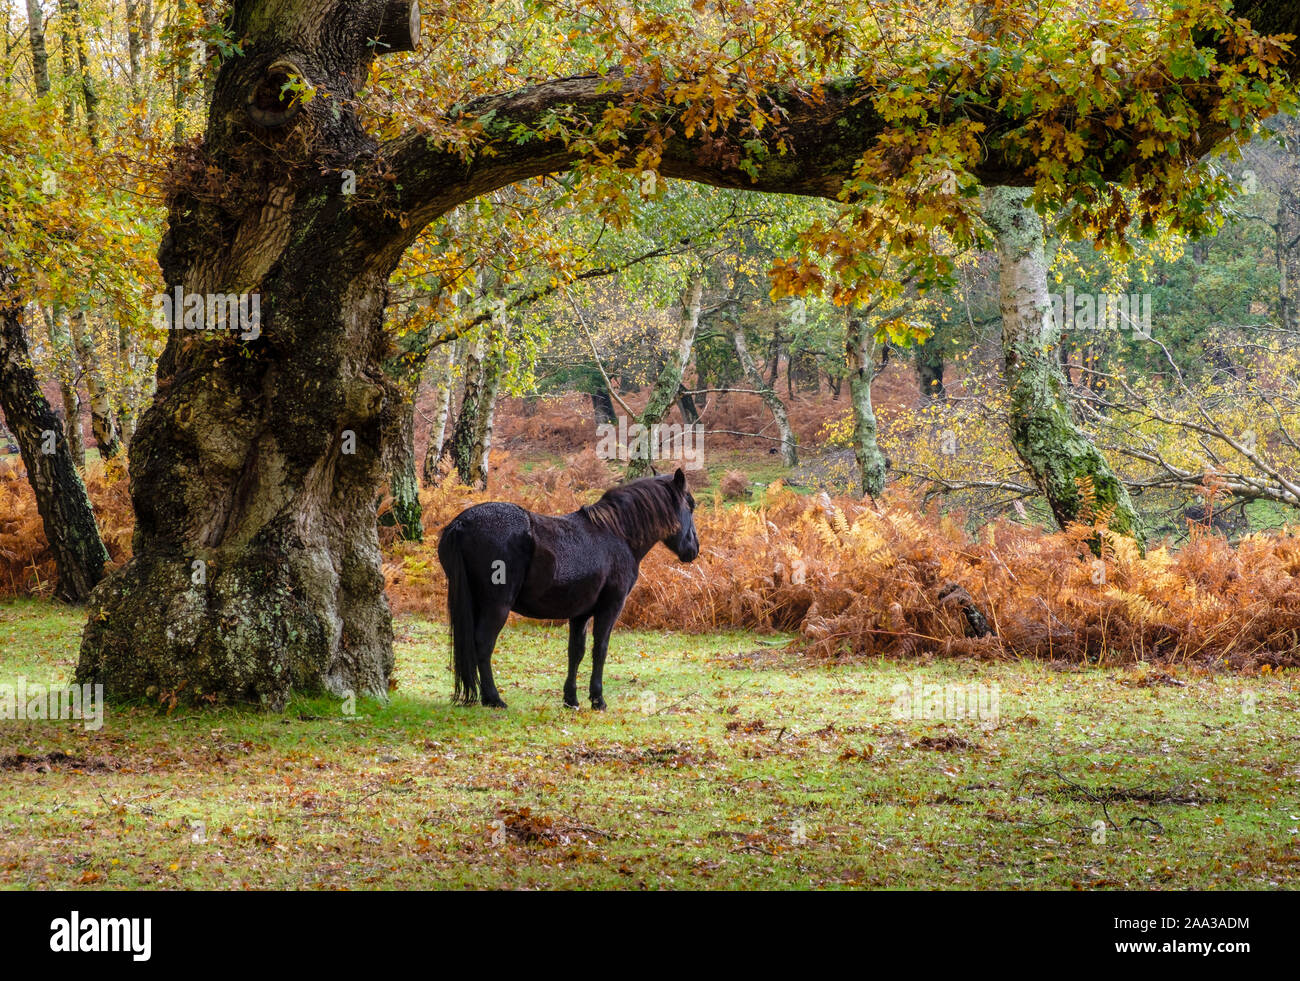 New Forest Pony unter Eiche Baum stehend mit Farben des Herbstes, Hampshire, England, UK. Stockfoto